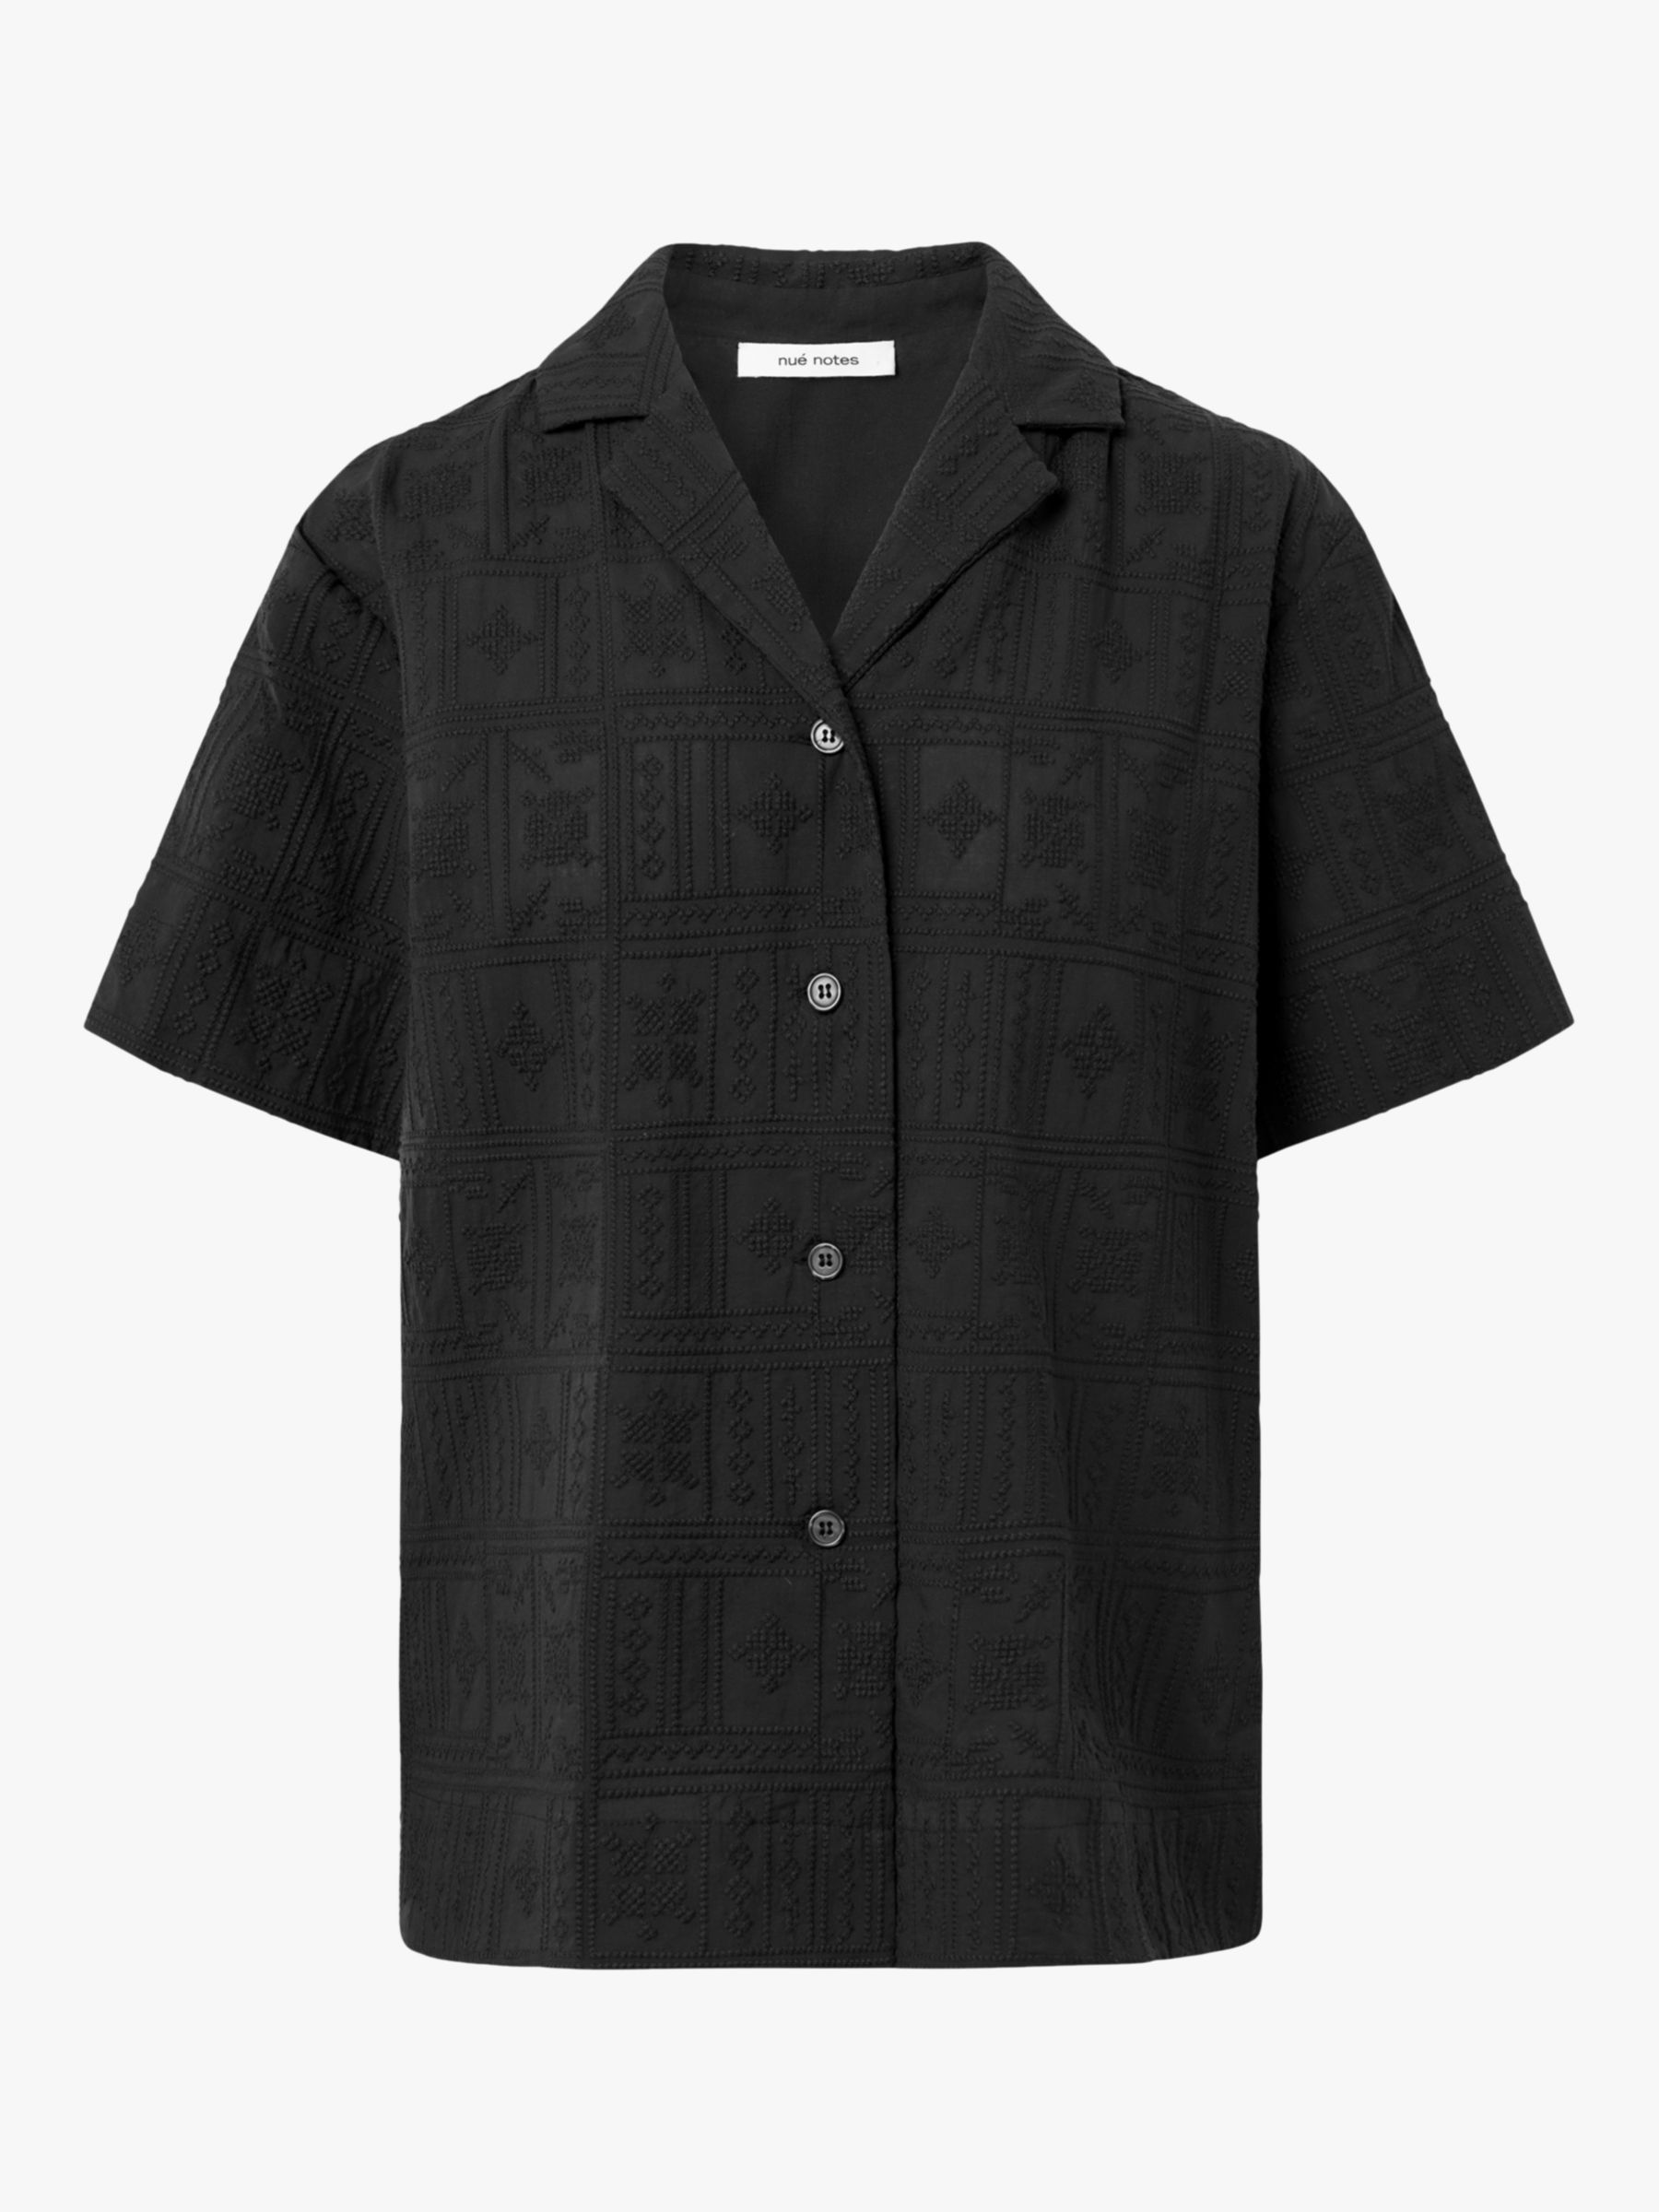 Buy nué notes Henri Short Sleeve Shirt, Black Online at johnlewis.com